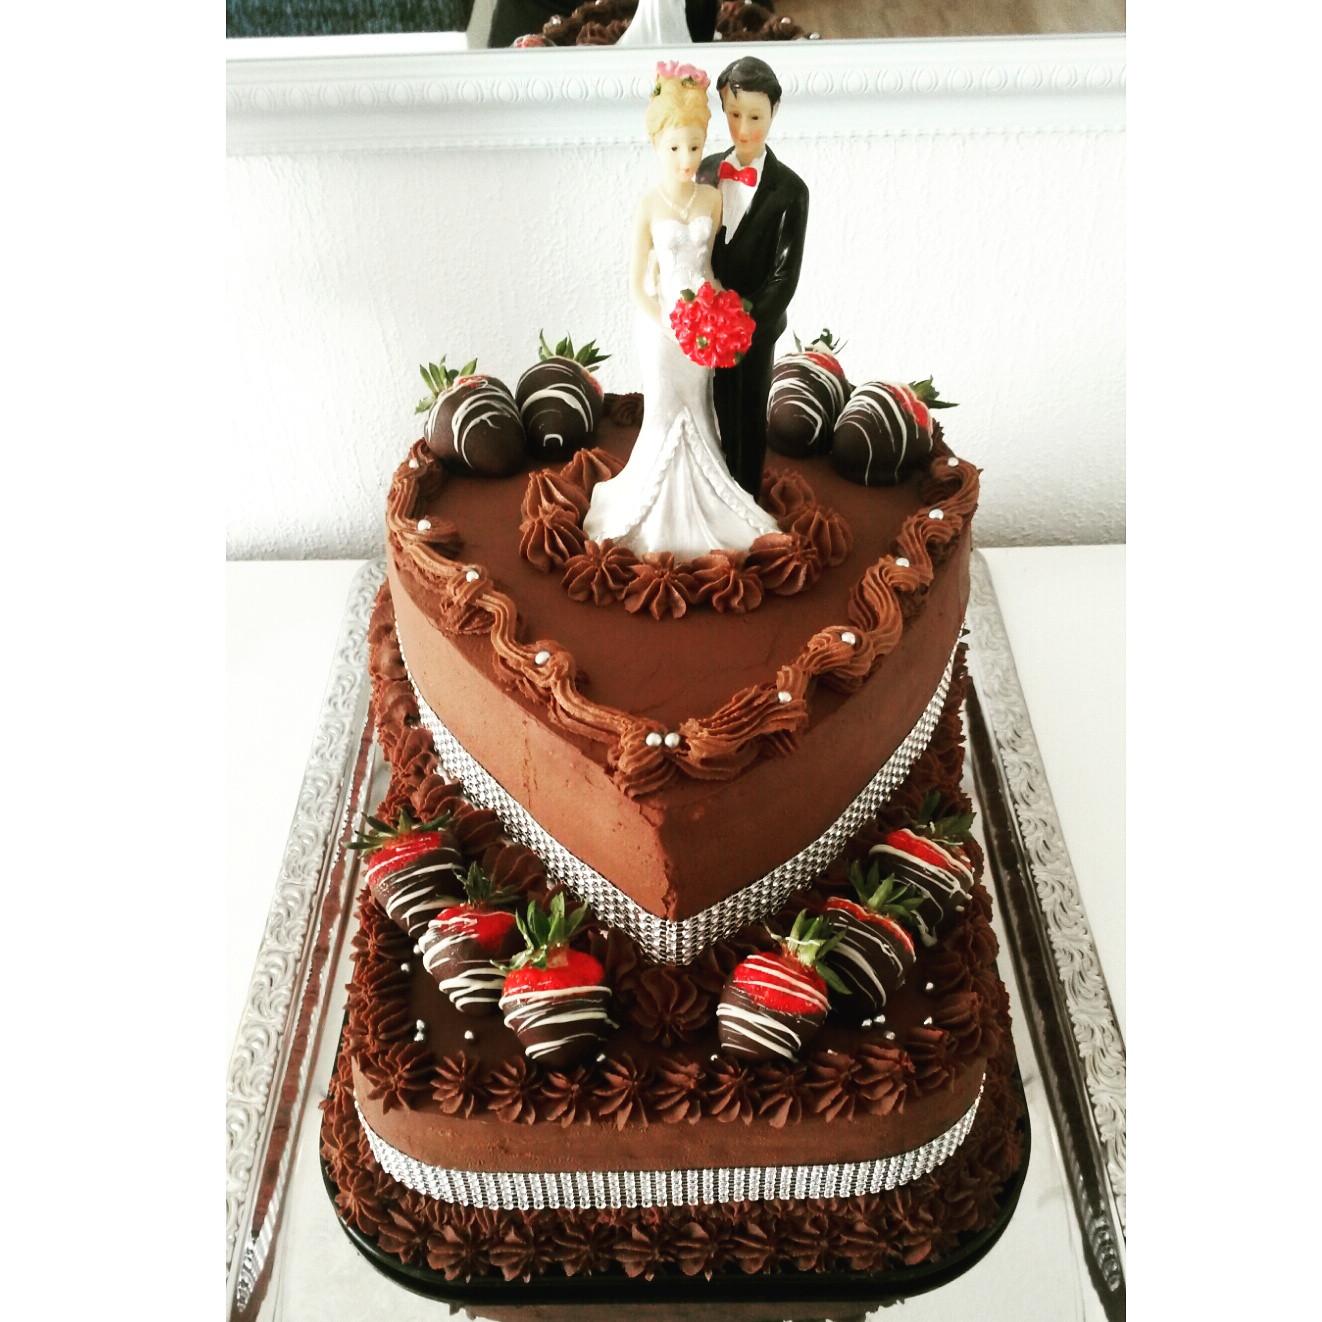 Hochzeitstorte Erdbeer
 Wilkommen in der Welt von Cupcakes Kuchen & Co